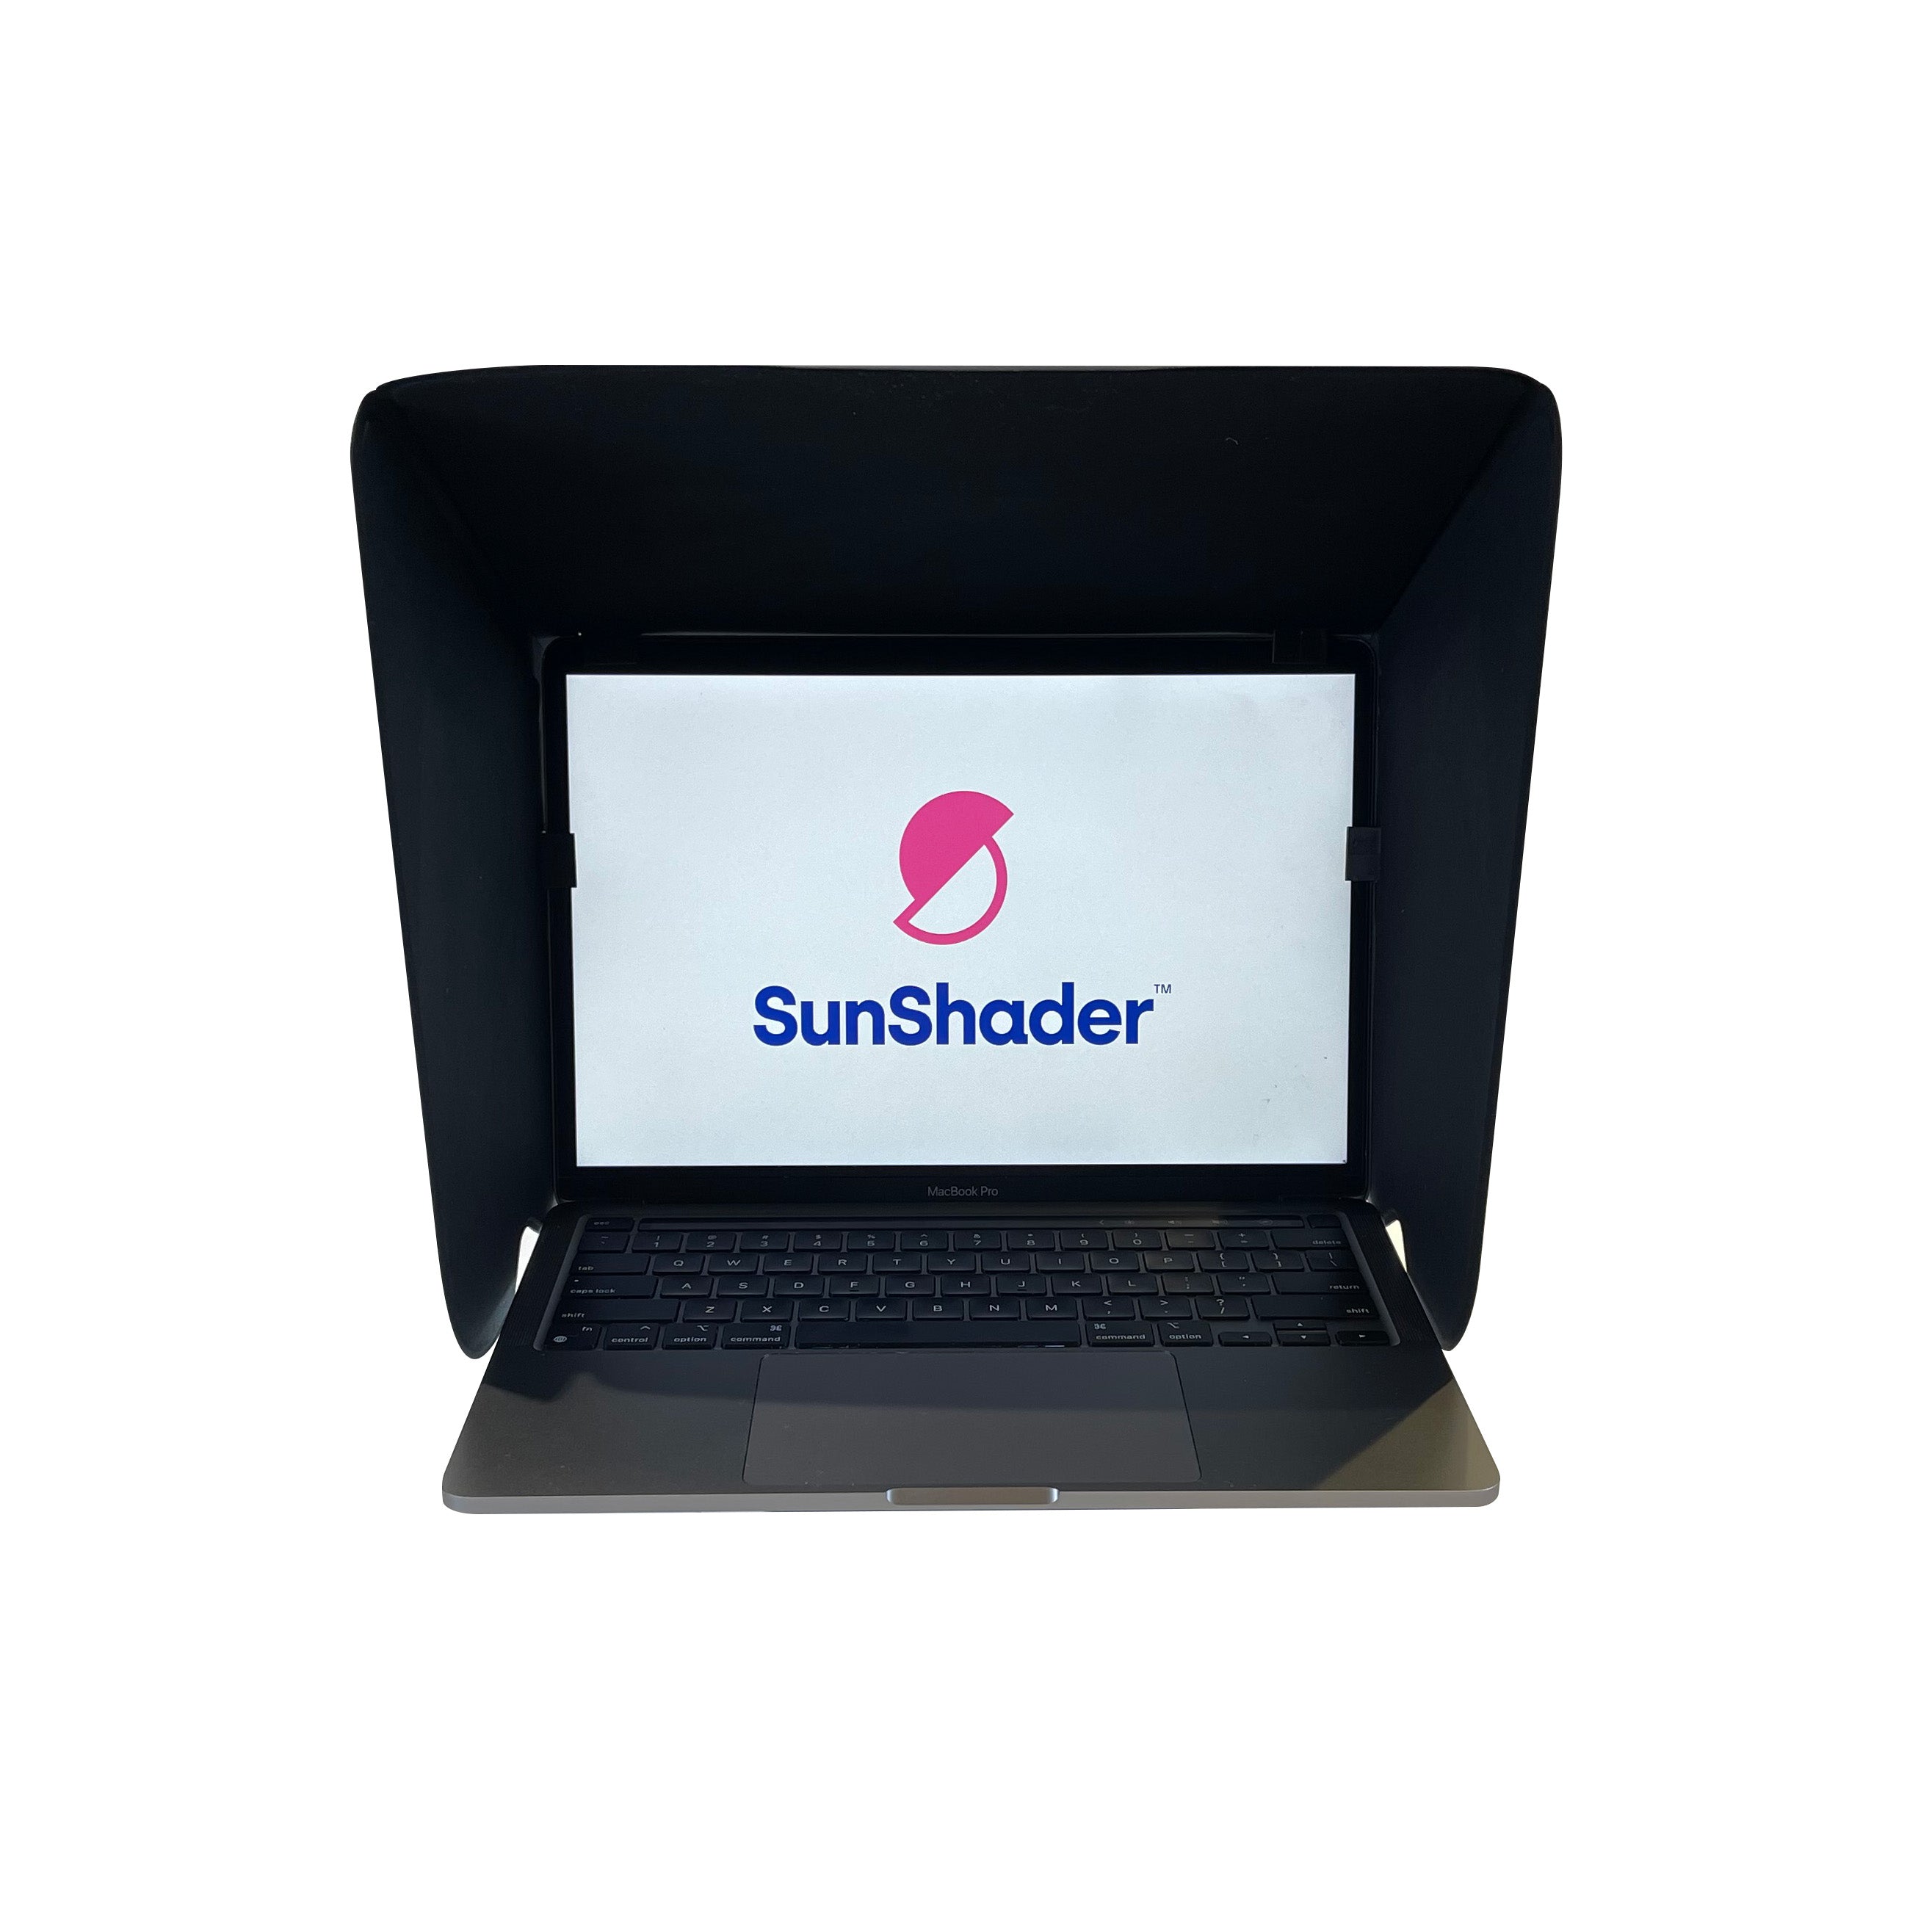 SunShader 2 - Laptop Sun Shade & Privacy Screen